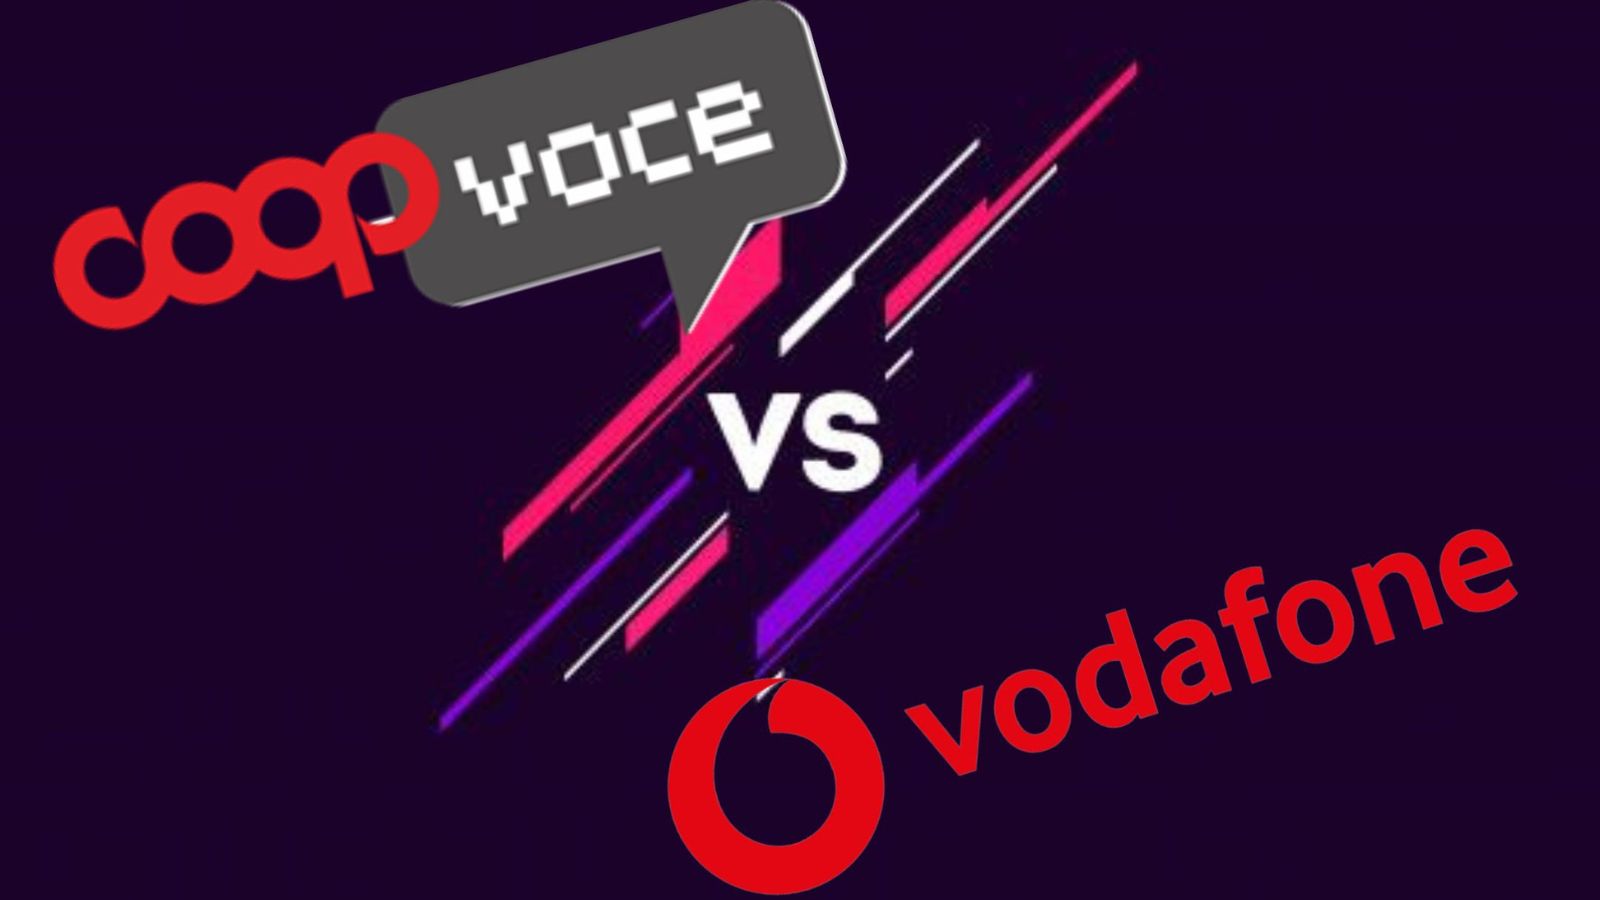 CoopVoce sfida Vodafone, le 3 OFFERTE a confronto: si parte da 6 EURO